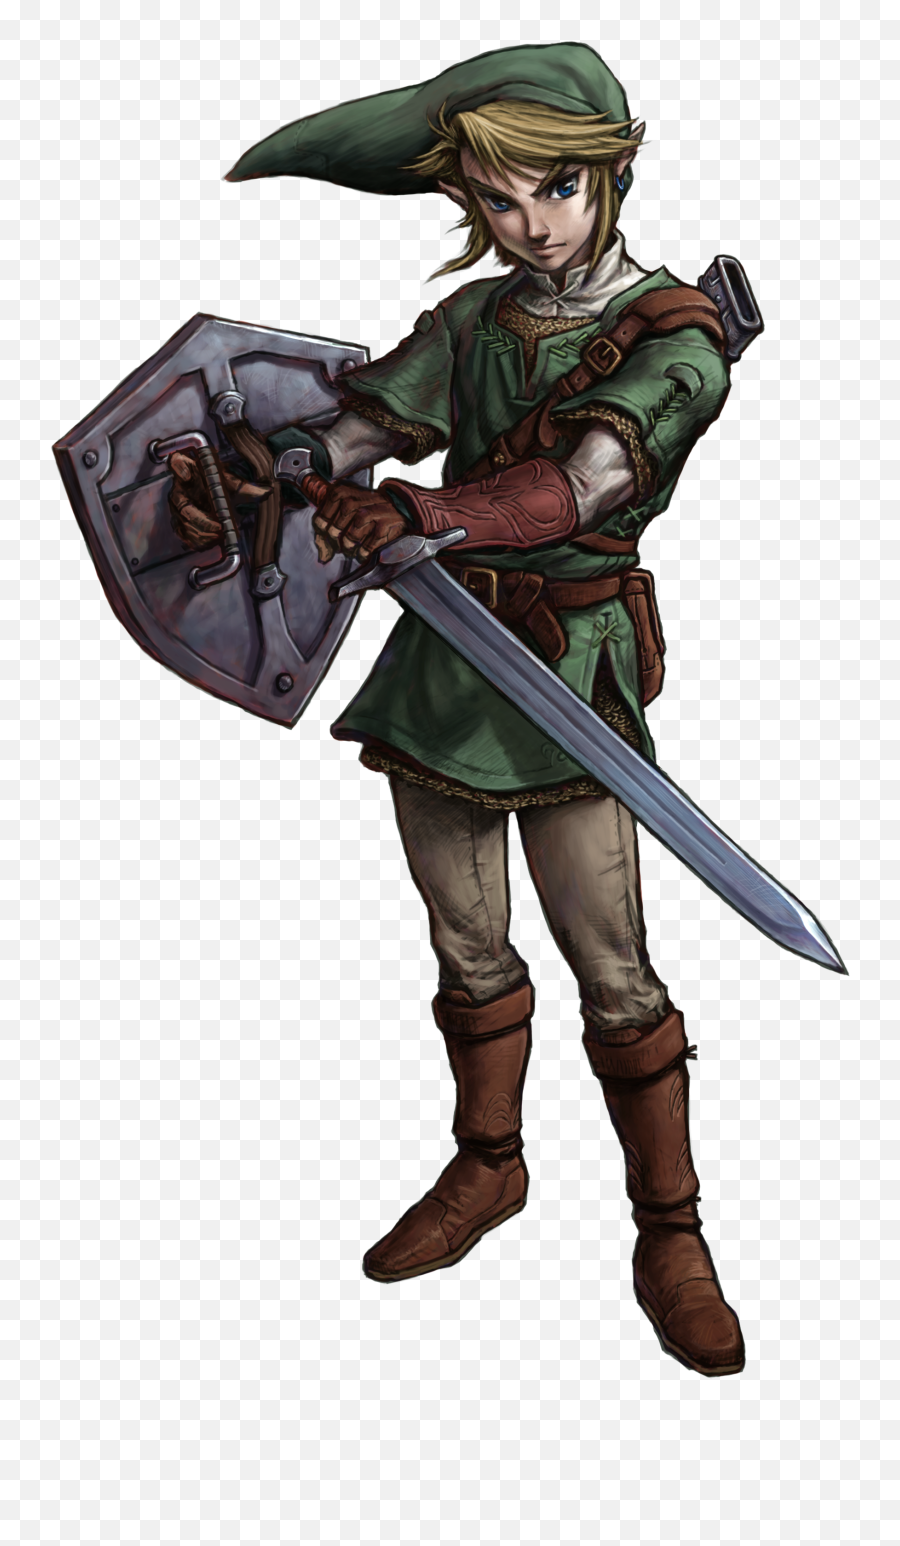 Favorite Link Design - The Legend Of Zelda Breath Of The Legend Of Zelda Link Png,Breath Of The Wild Link Png